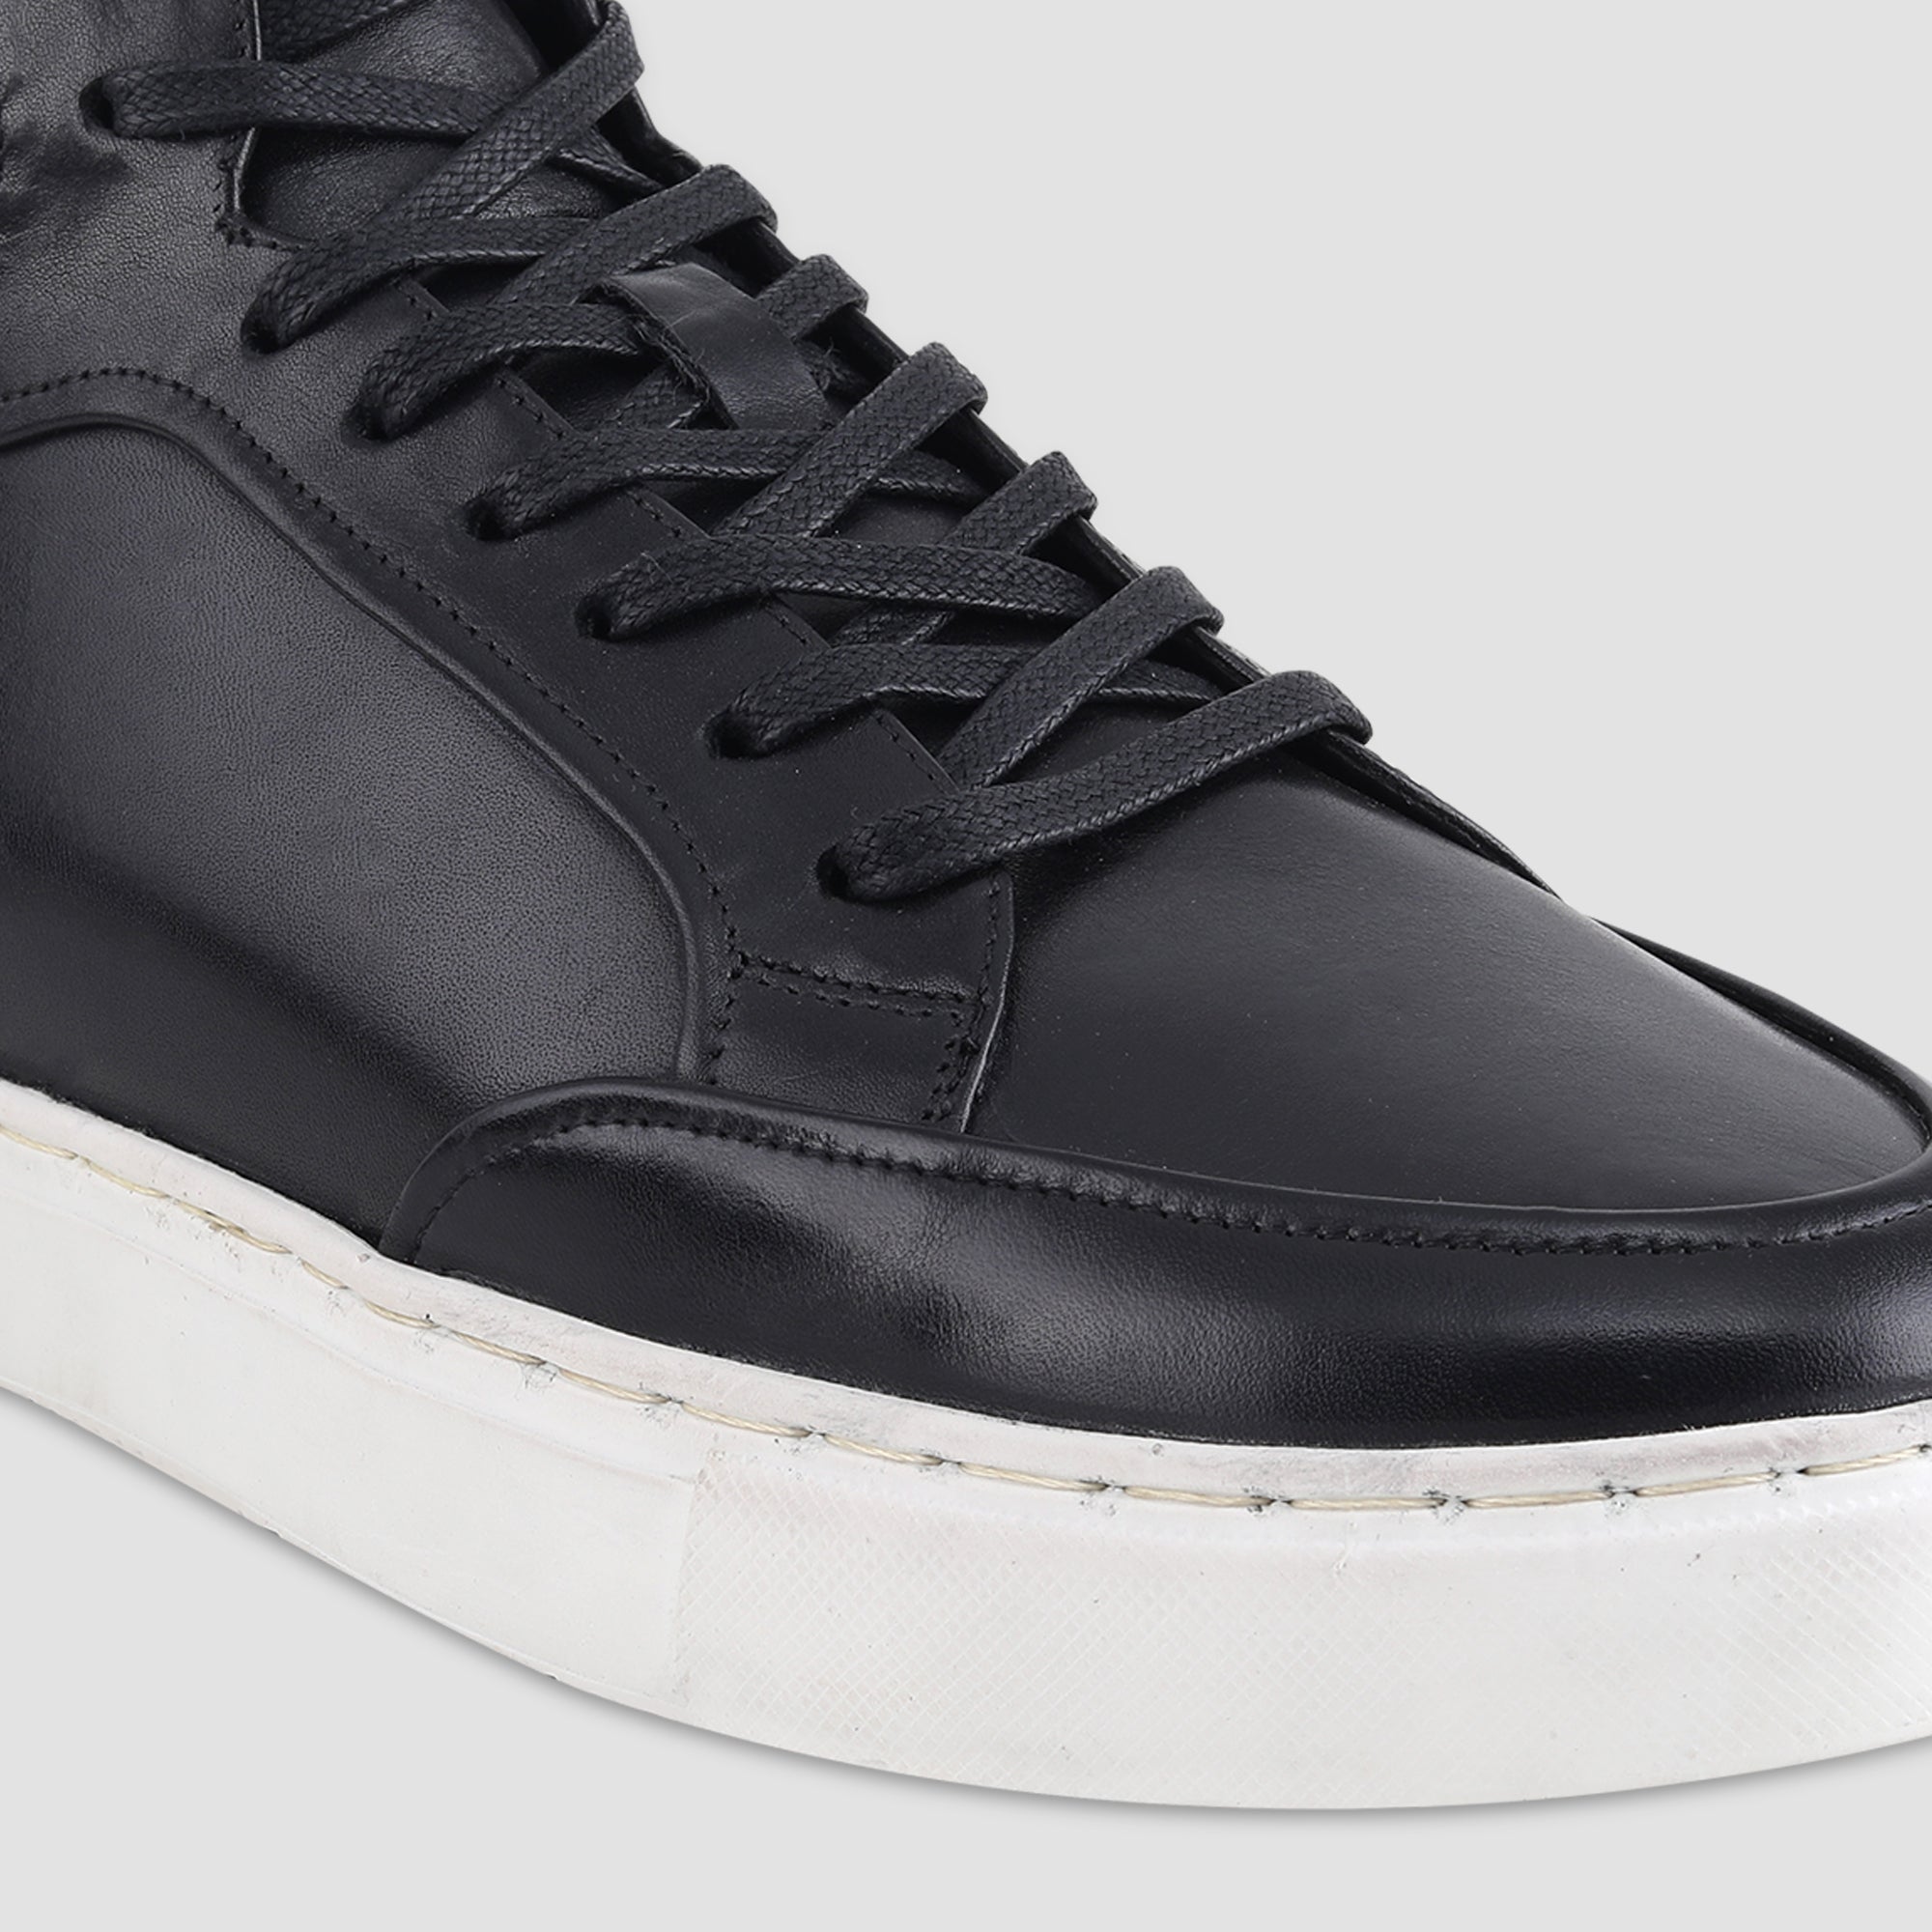 Ezok Black Leather Sneaker For Men